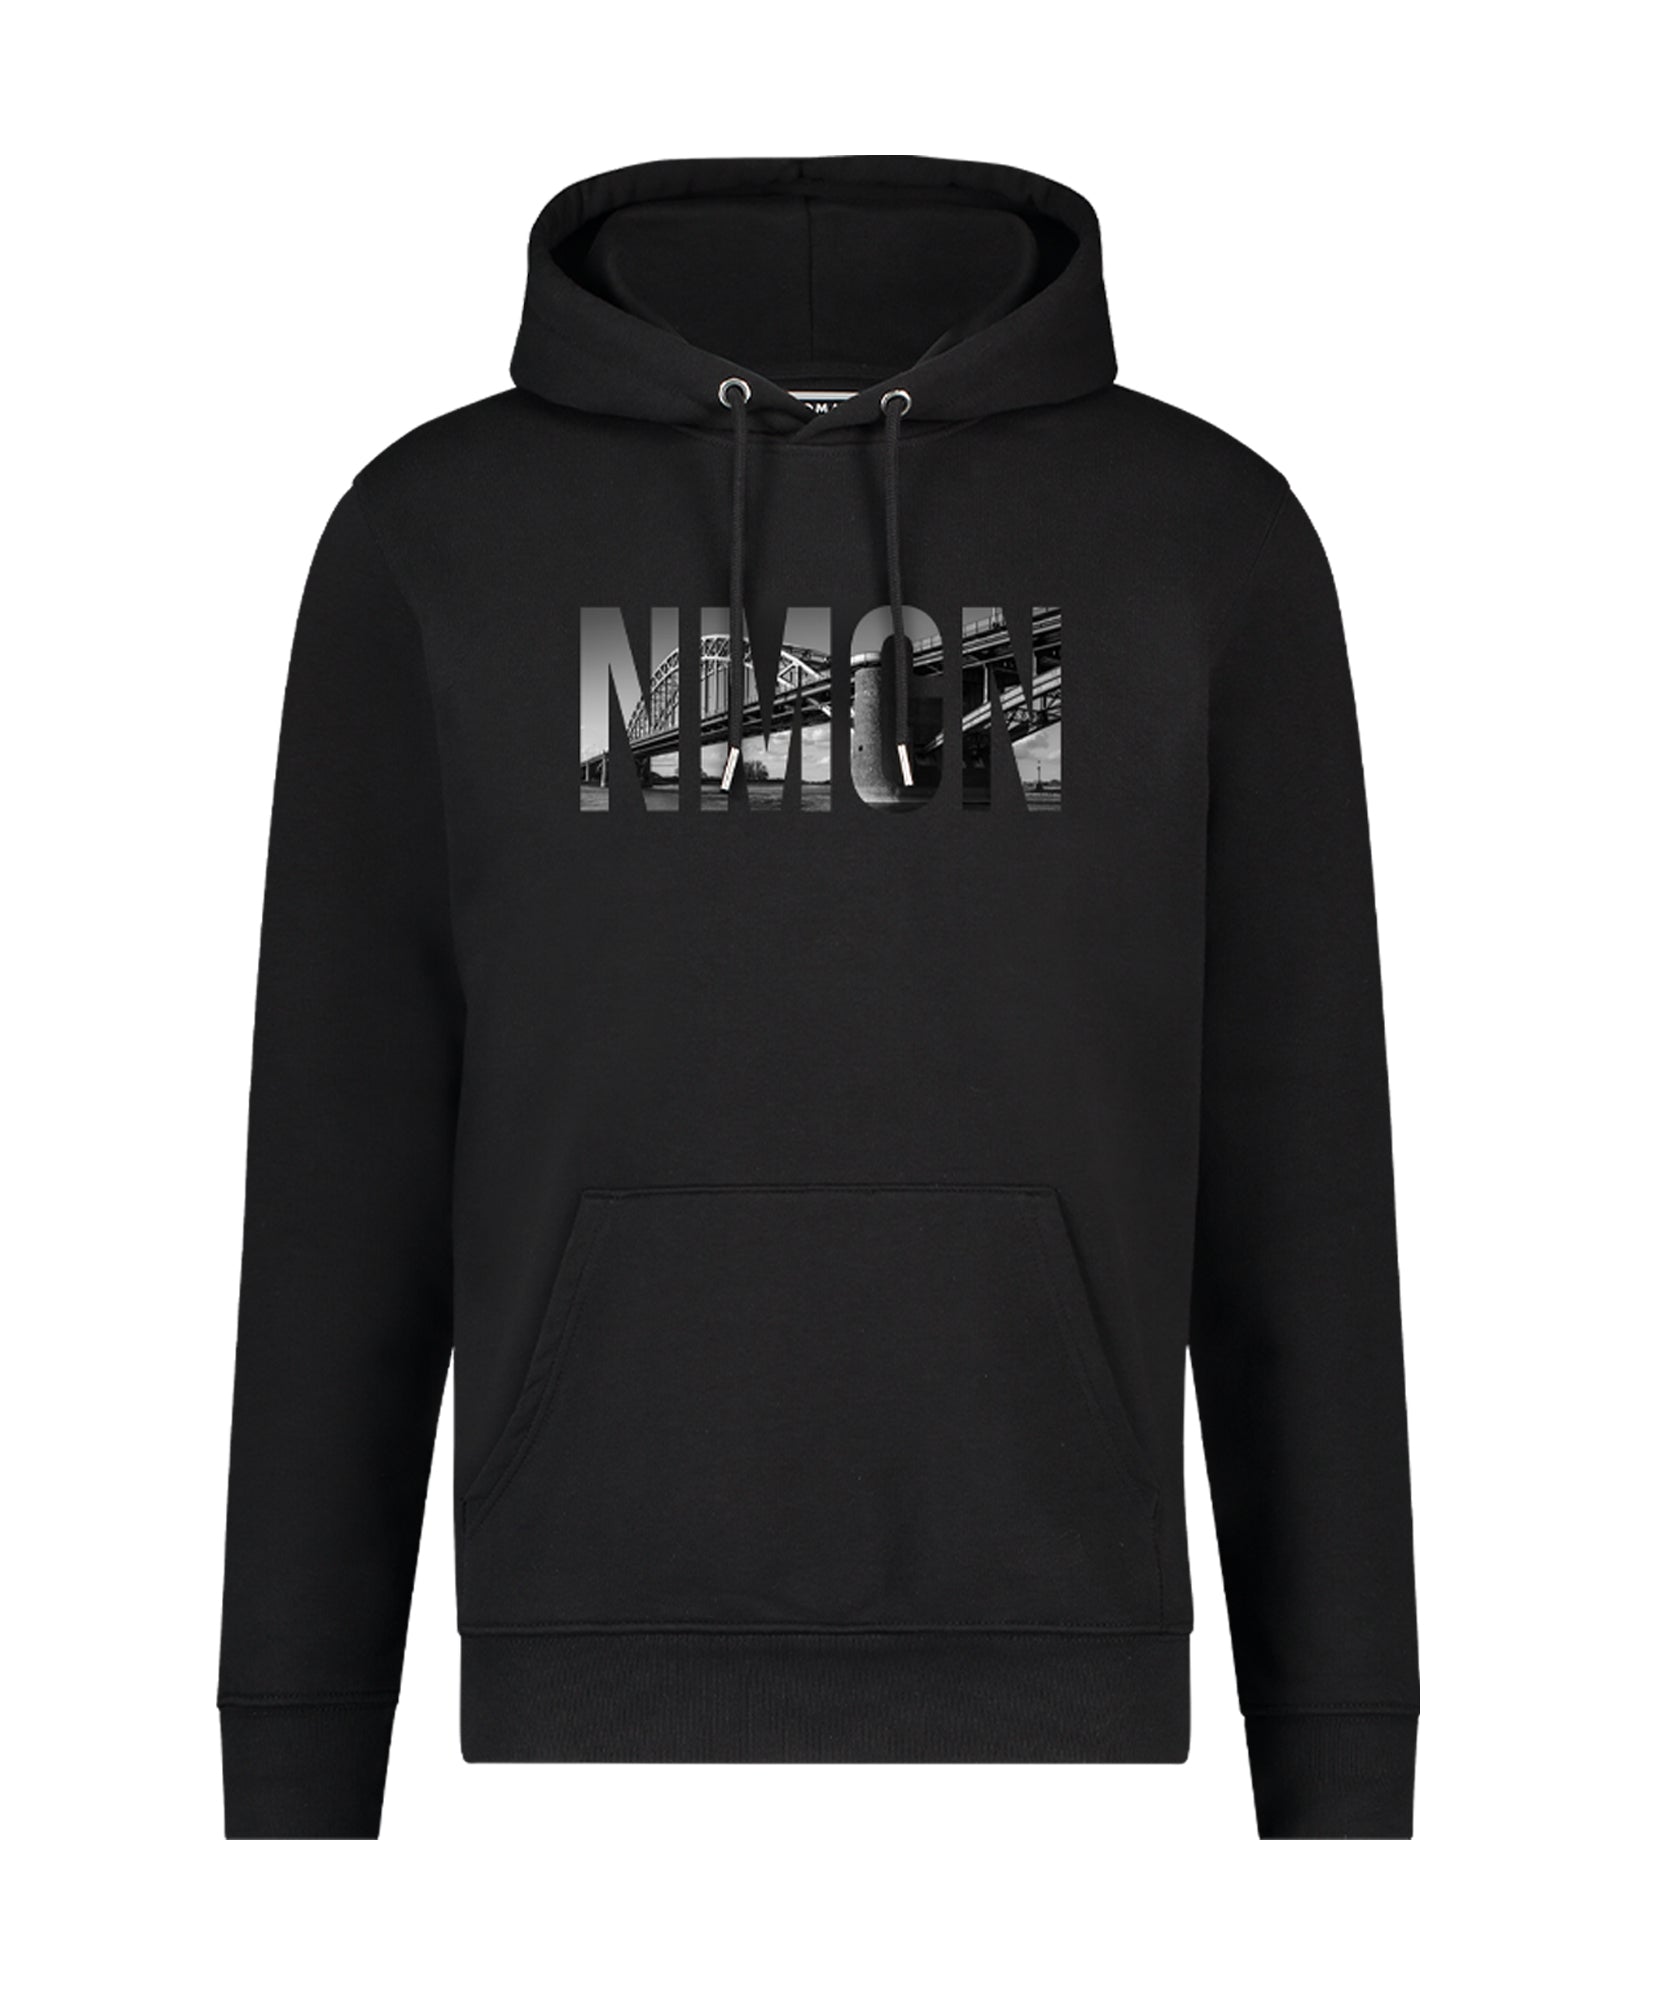 Zwarte Nijmegen hooded sweater hoodie met capuchon en NMGN waalbrugprint